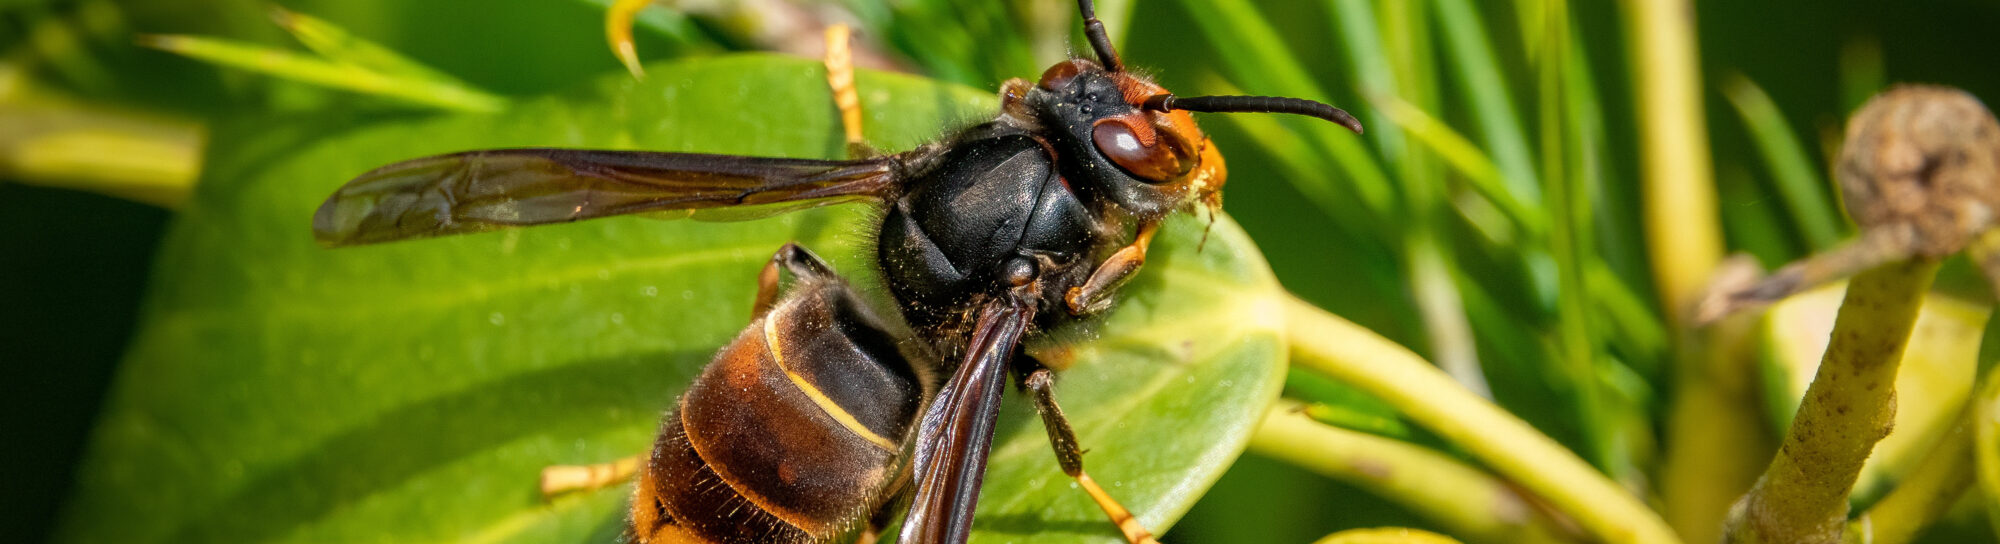 Asian hornet threatens native honey bee